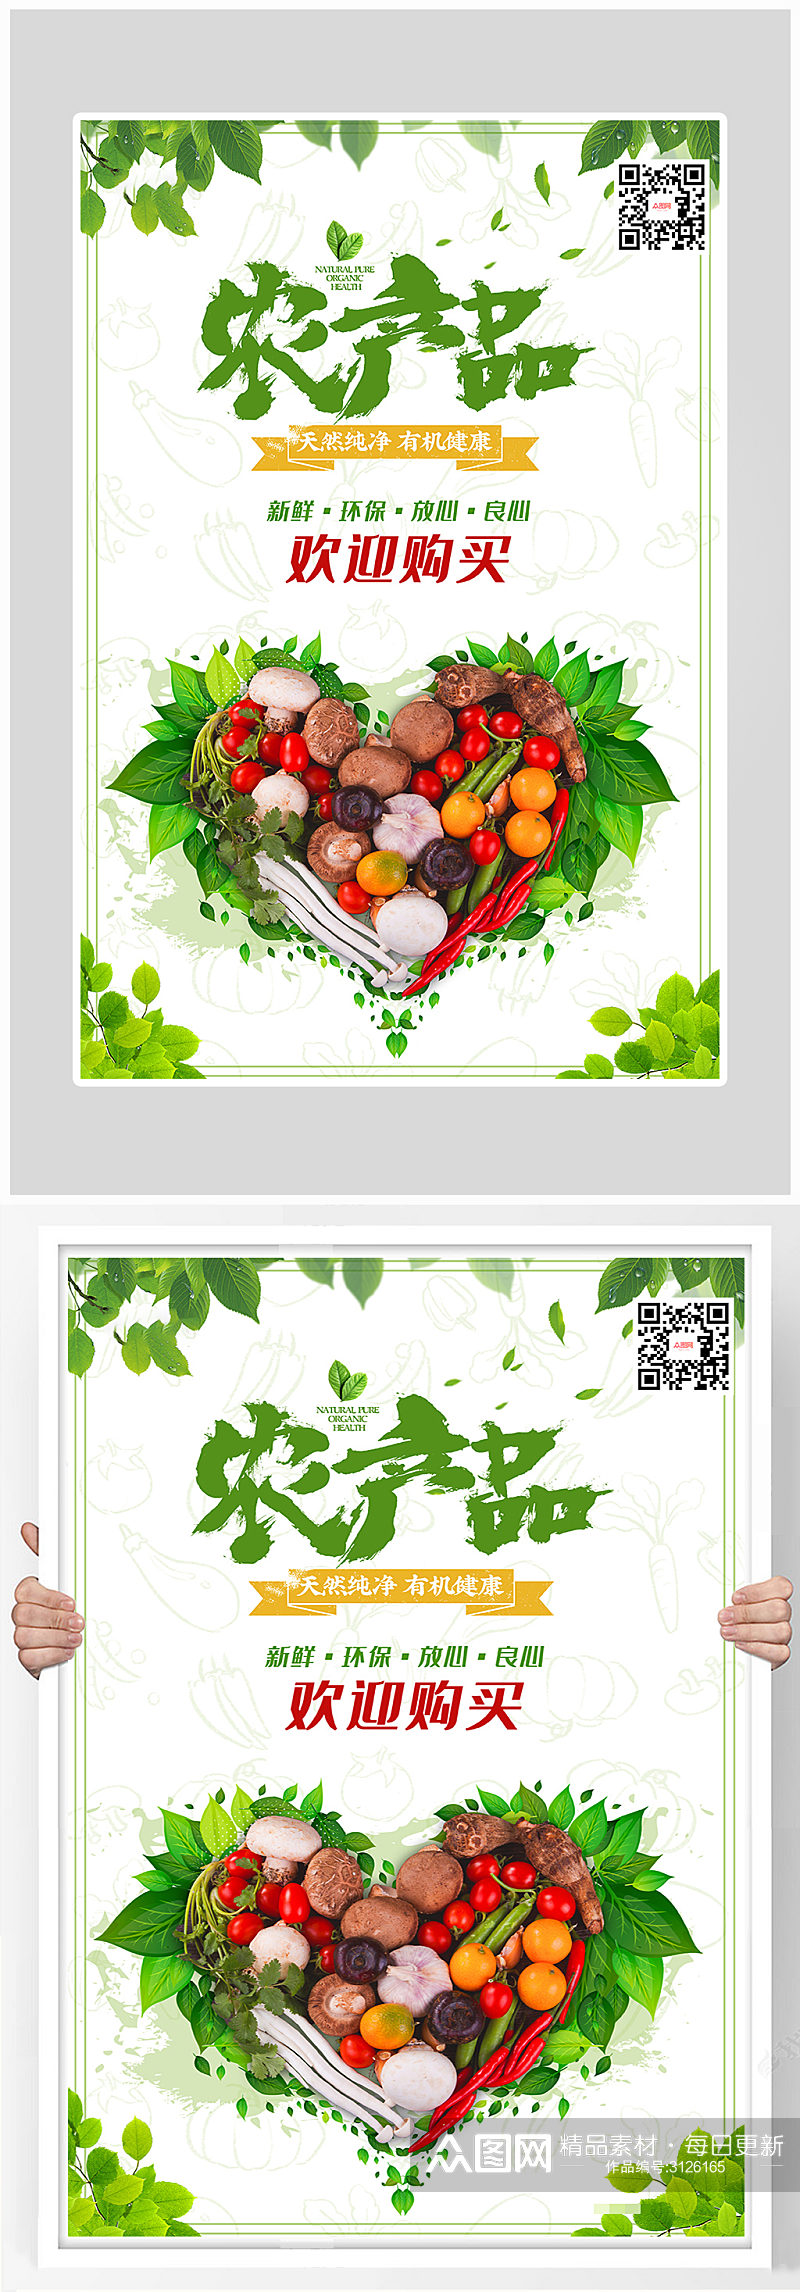 创意简约农产品绿色海报设计素材